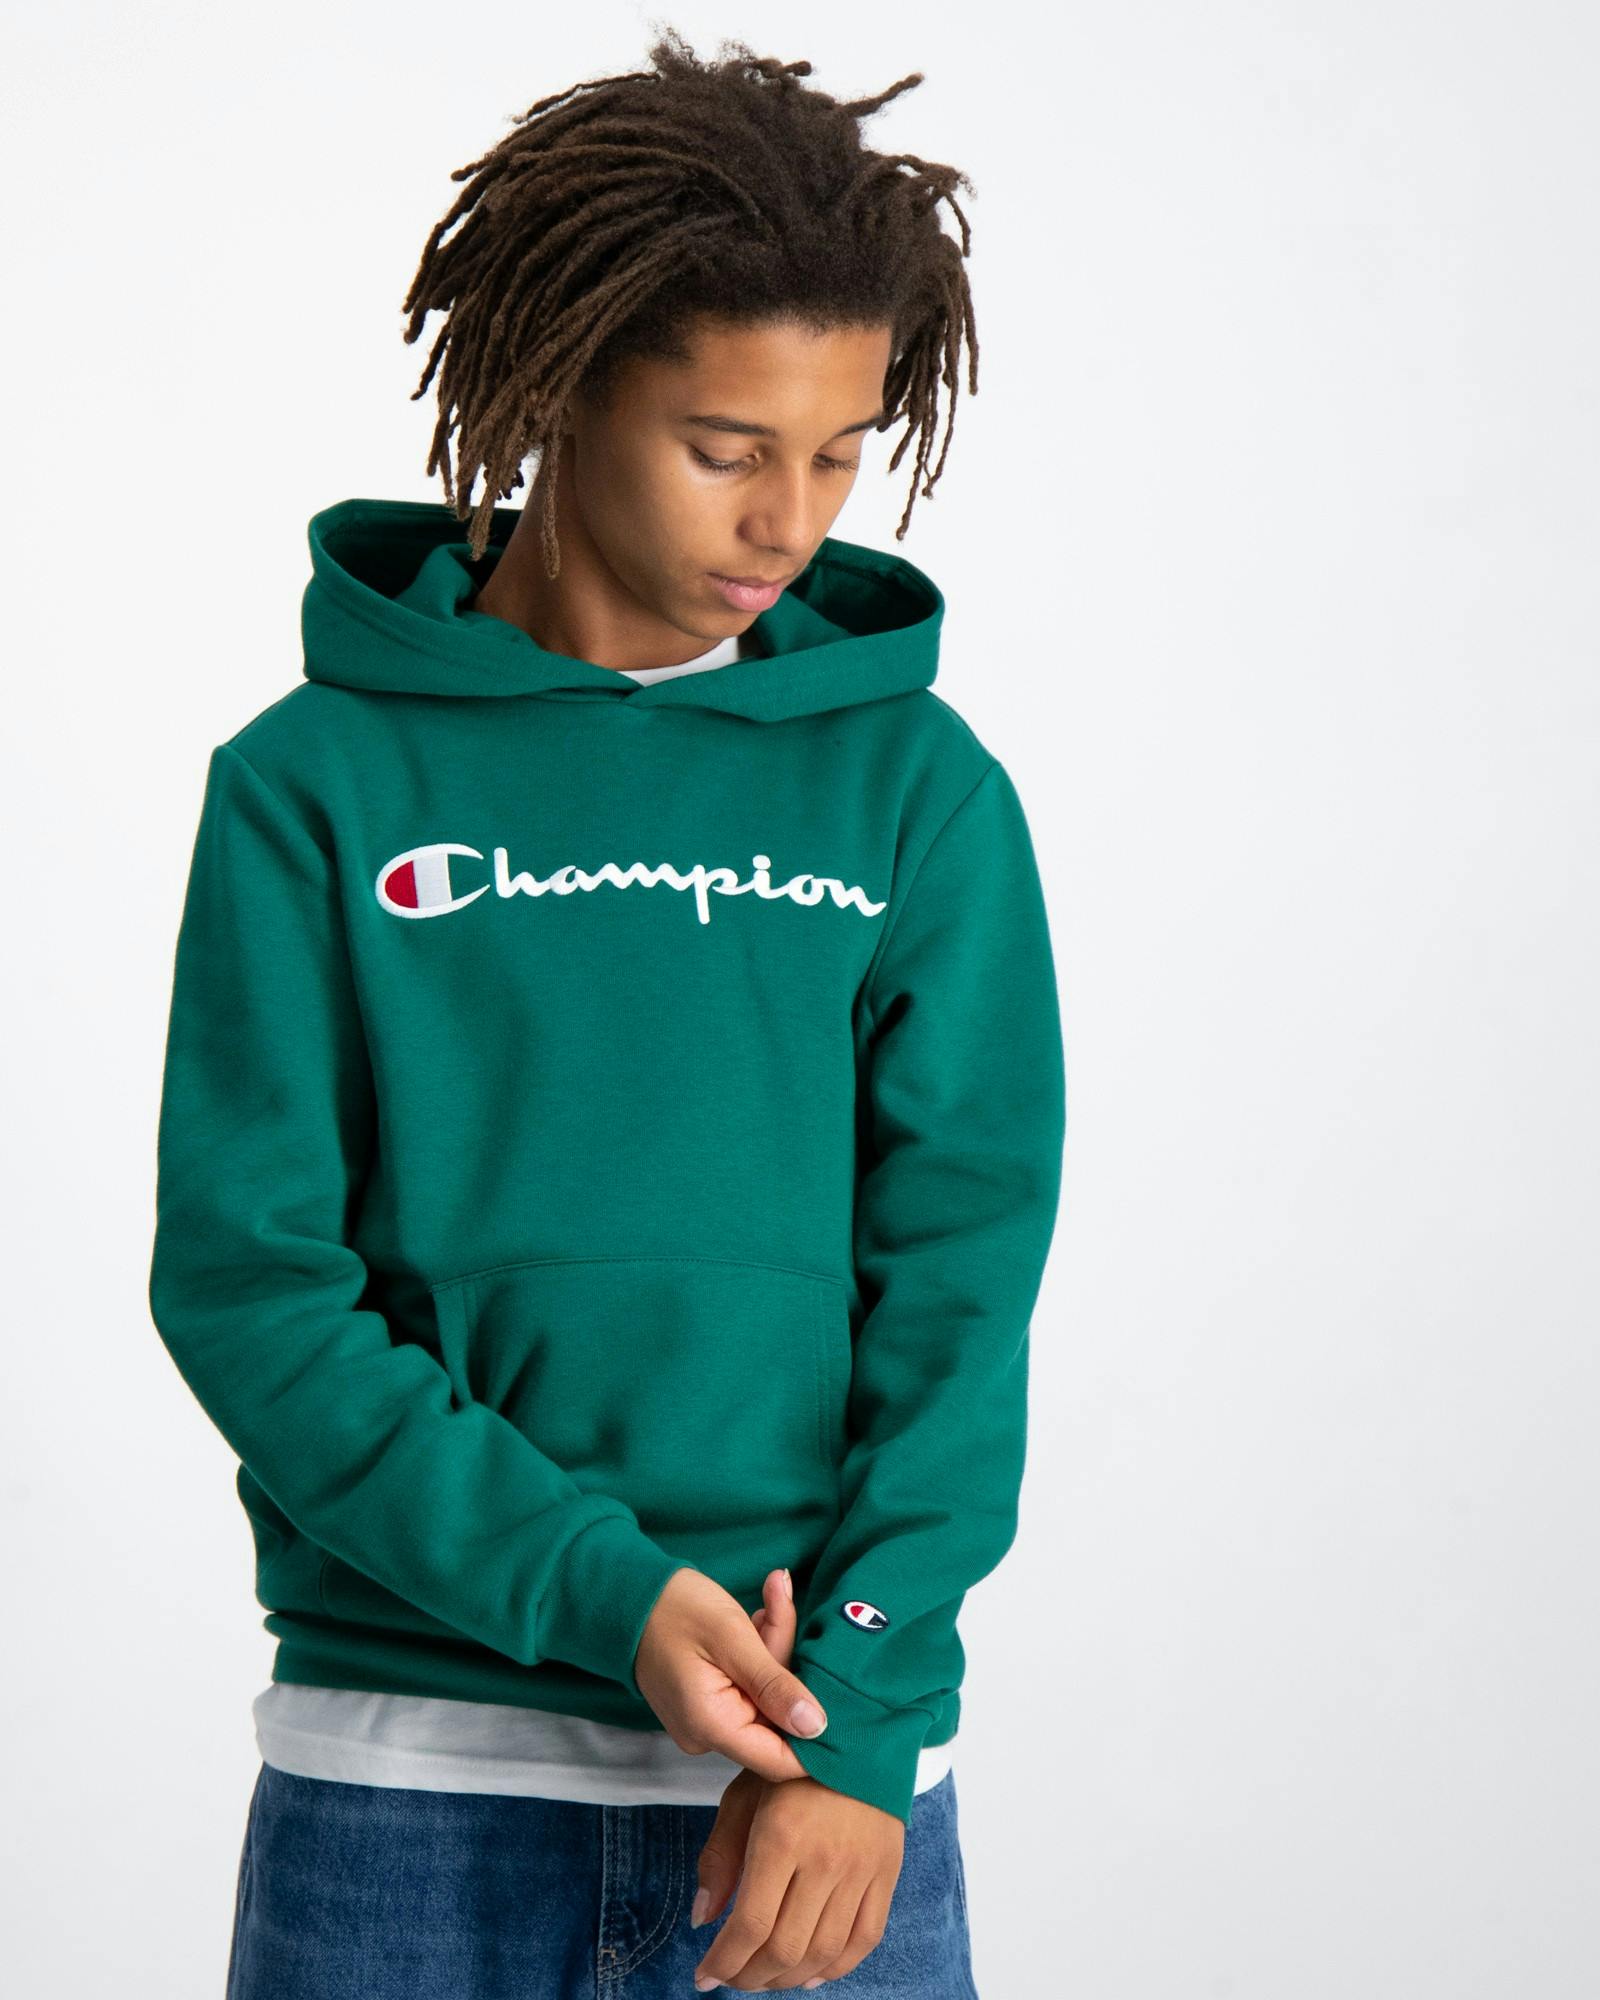 Grün Hooded Sweatshirt Kids | Jungen Brand Store für